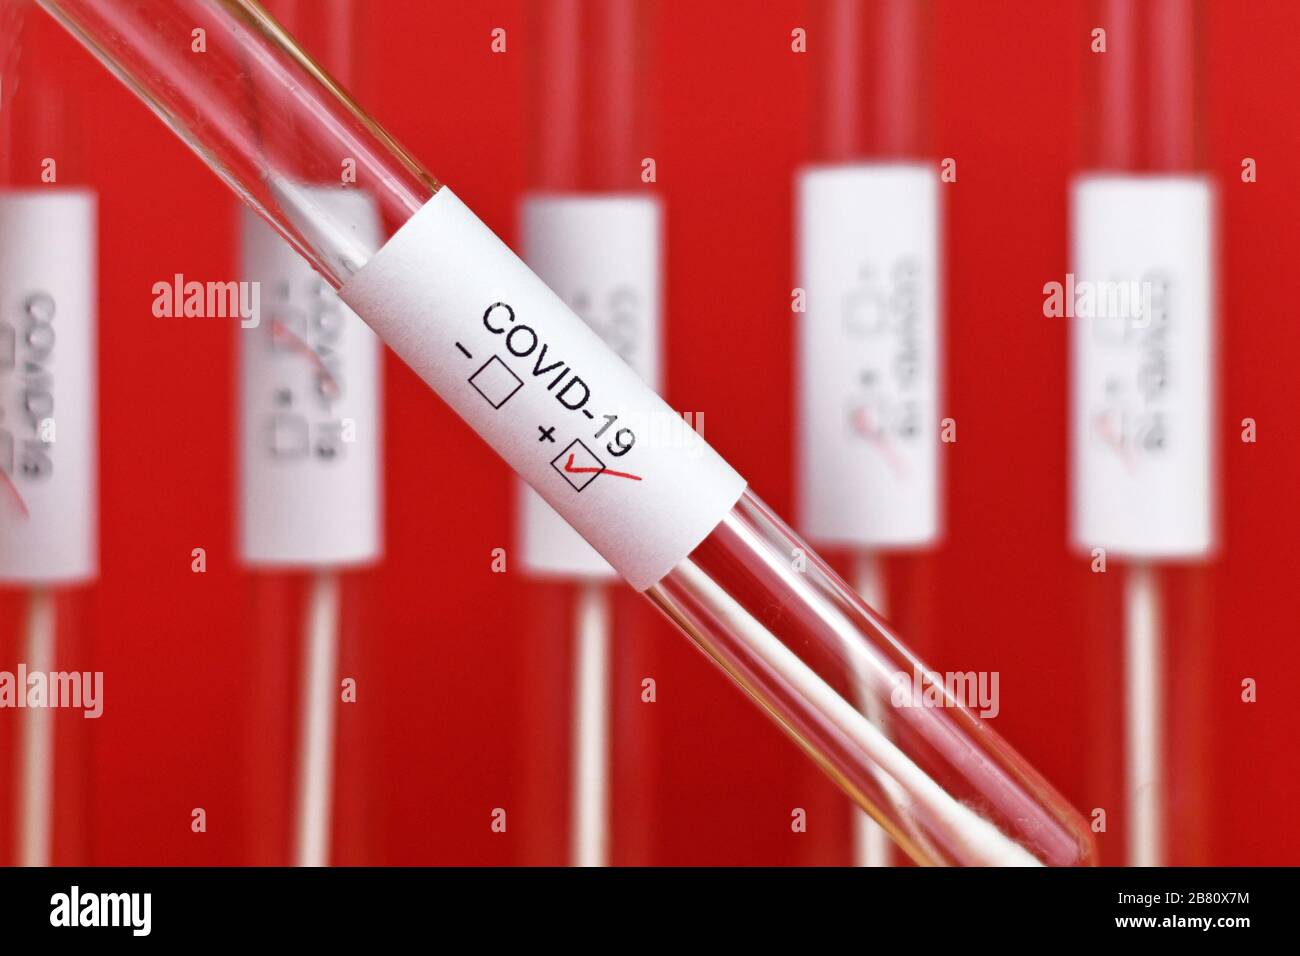 Campione di provetta per analisi medica positiva per Coronavirus con etichetta Covid-19 con altre provette blury su sfondo rosso Foto Stock